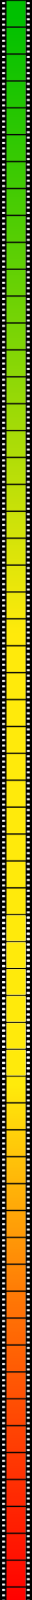 ffe drop film strip vertical color 32x1600px 